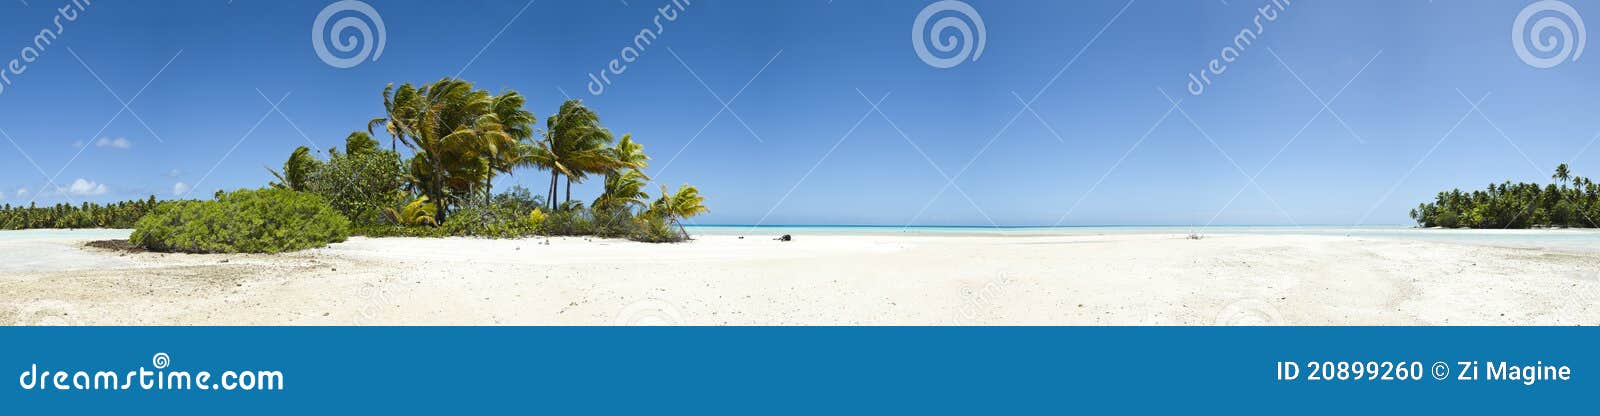 palm tree and white sand beach panoramic view